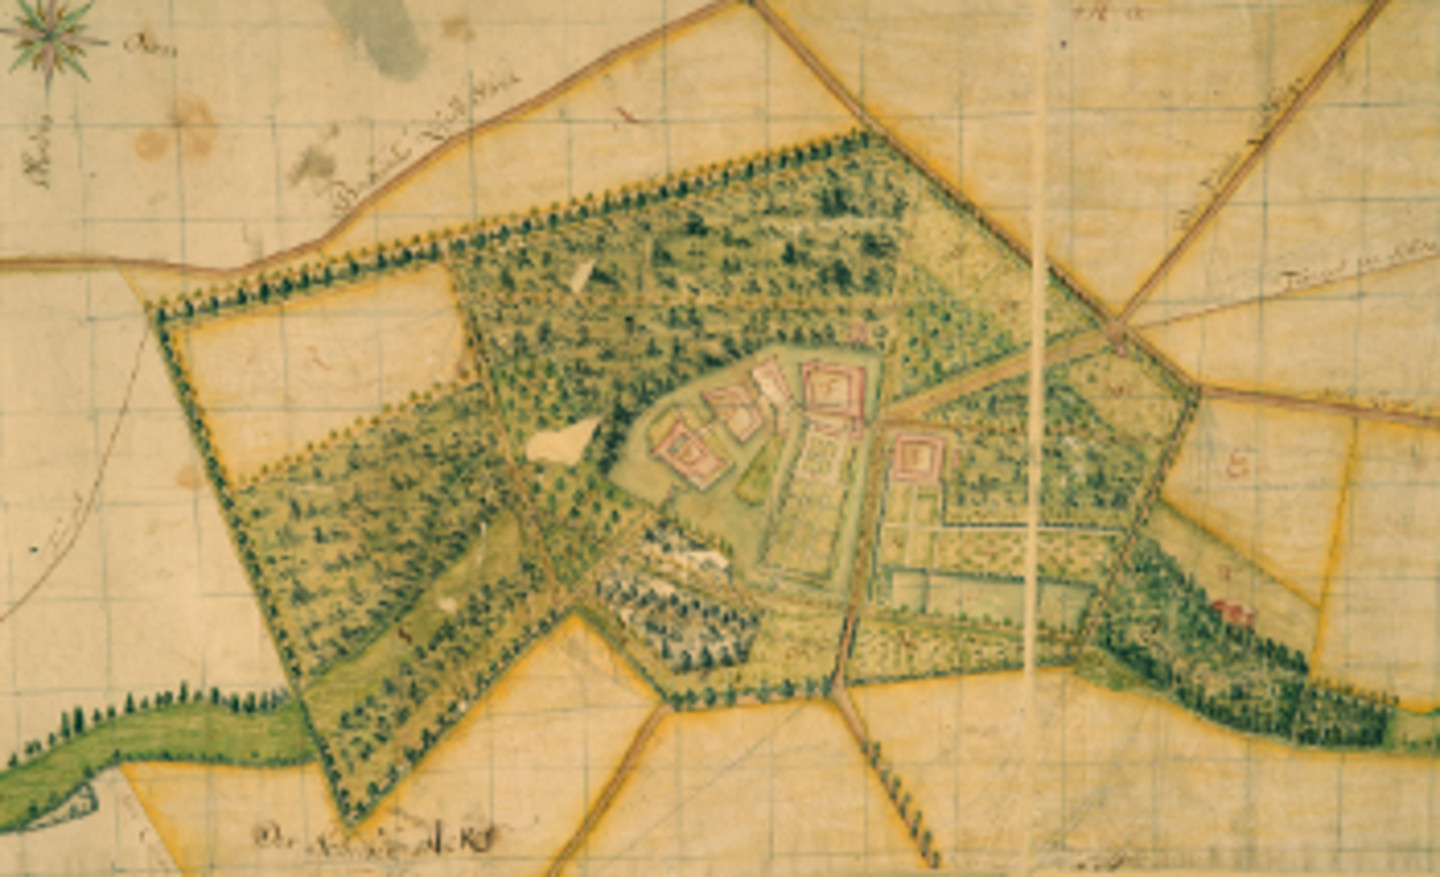 Abb. 1: Schloss Dyck mit seinen Gartenanlagen, kolorierte Karte der Reichsfreien Herrschaft Dyck von Joseph Otto, 1776 (Ausschnitt). <br><i>Rechte: Familie von Wolff Metternich zur Gracht</i>